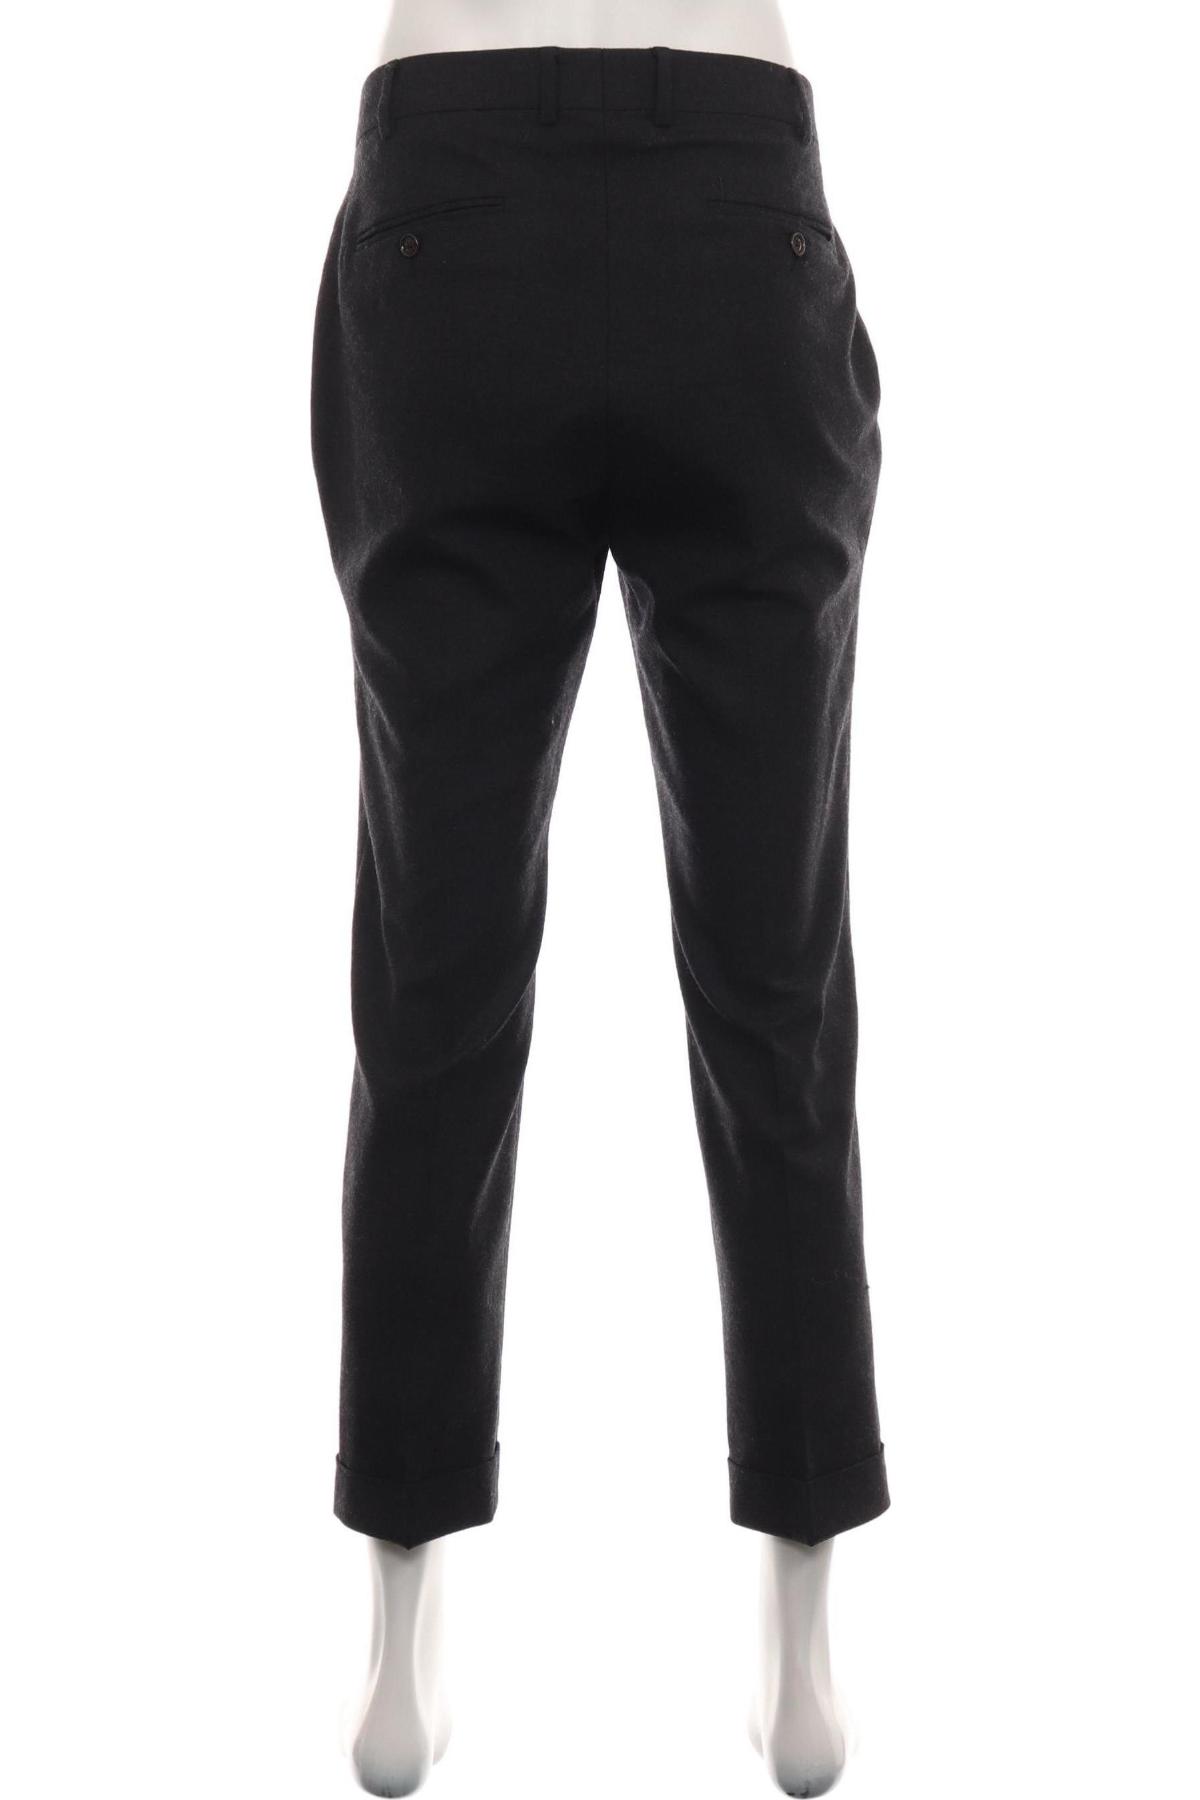 Официален панталон MAX VELA2